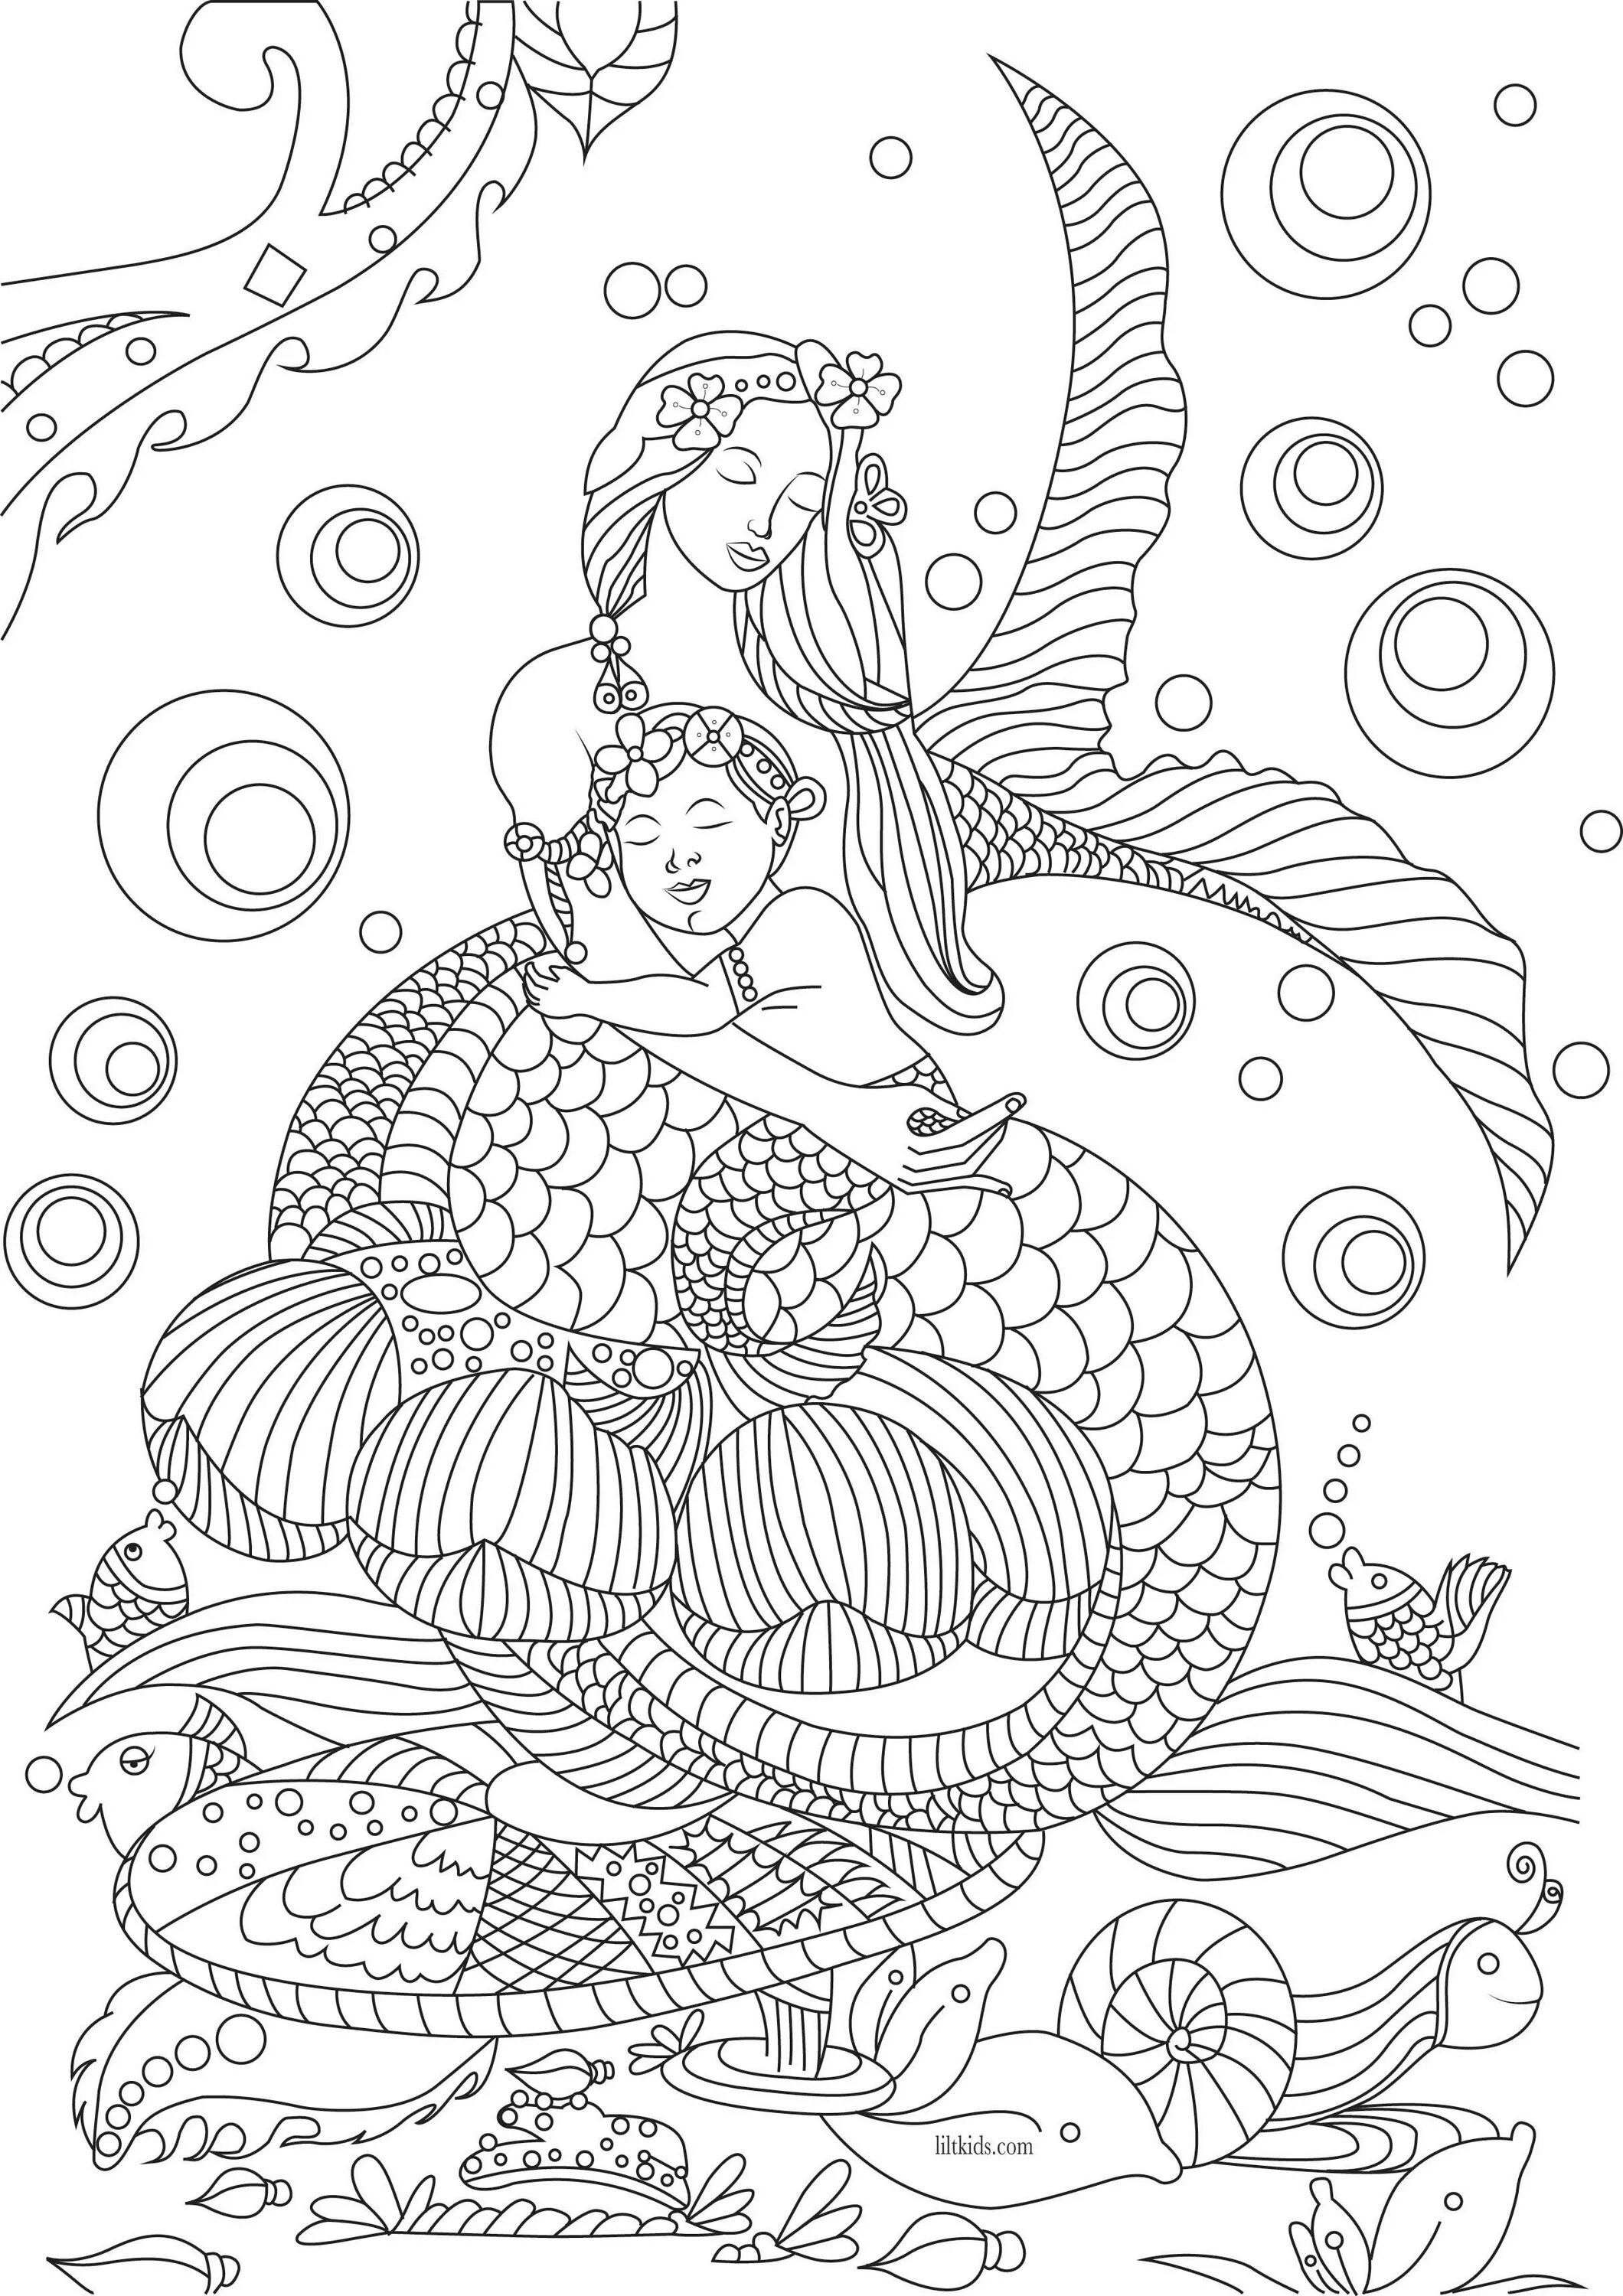 Wonderful coloring mermaid complex